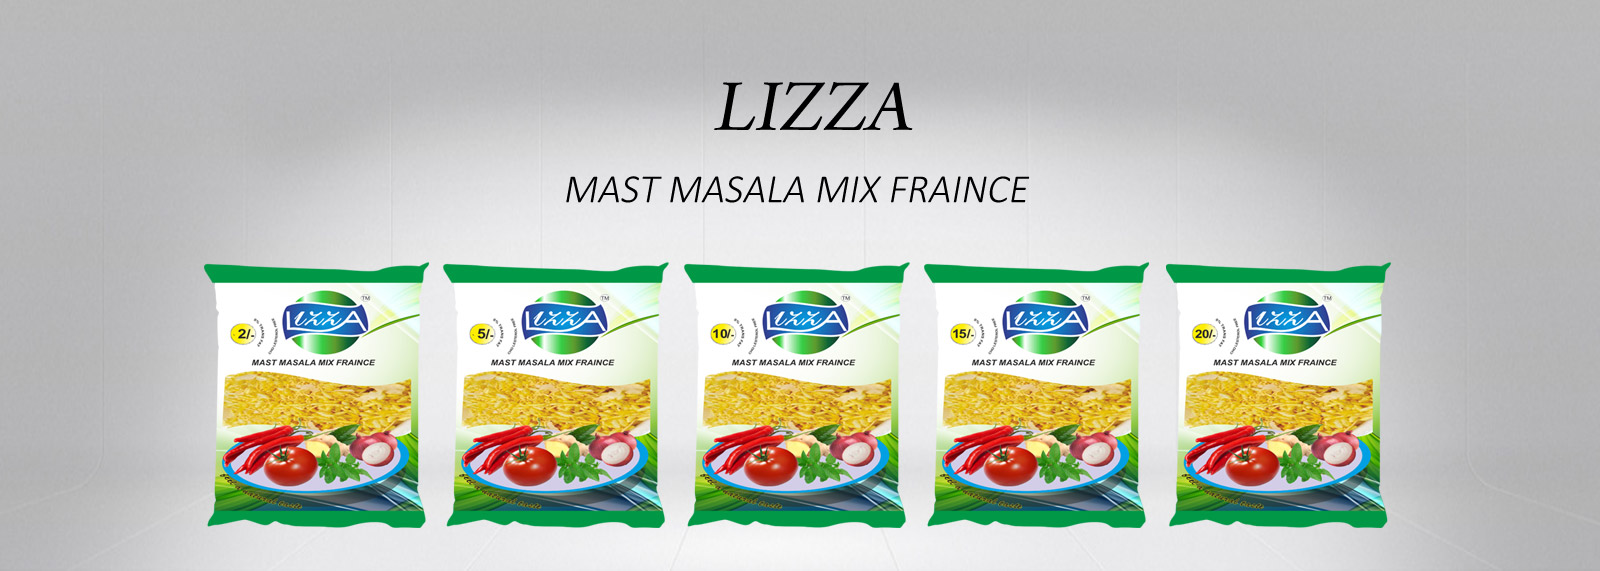 Lizza masti masala mix fraince